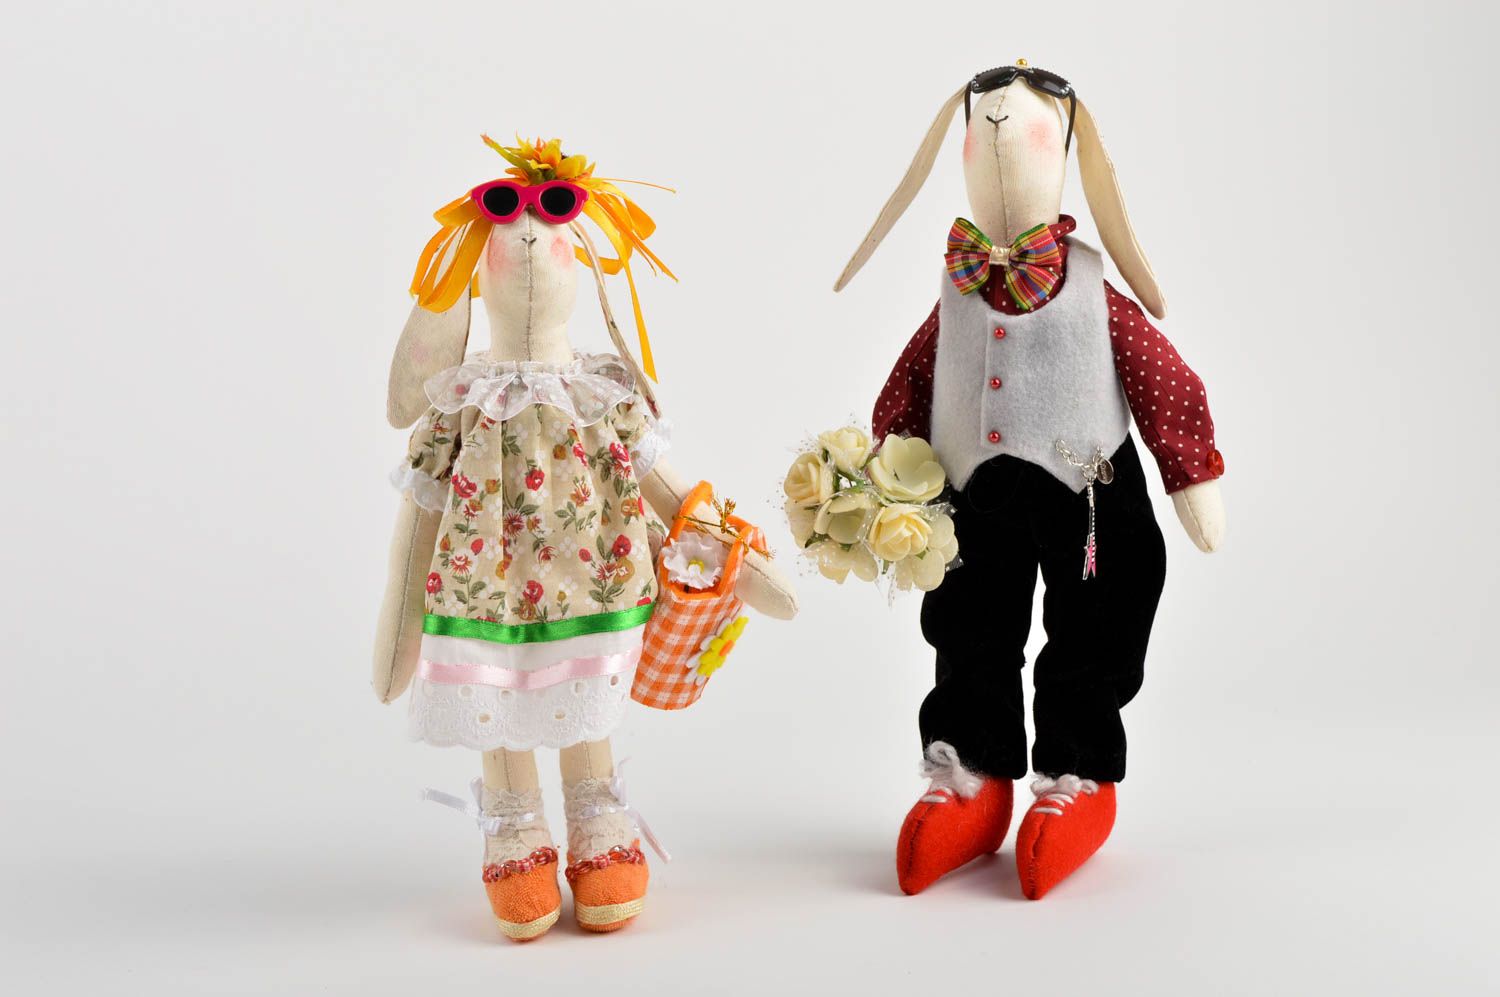 Conejos de peluche hechos a mano juguetes de tela regalos originales para niños foto 2